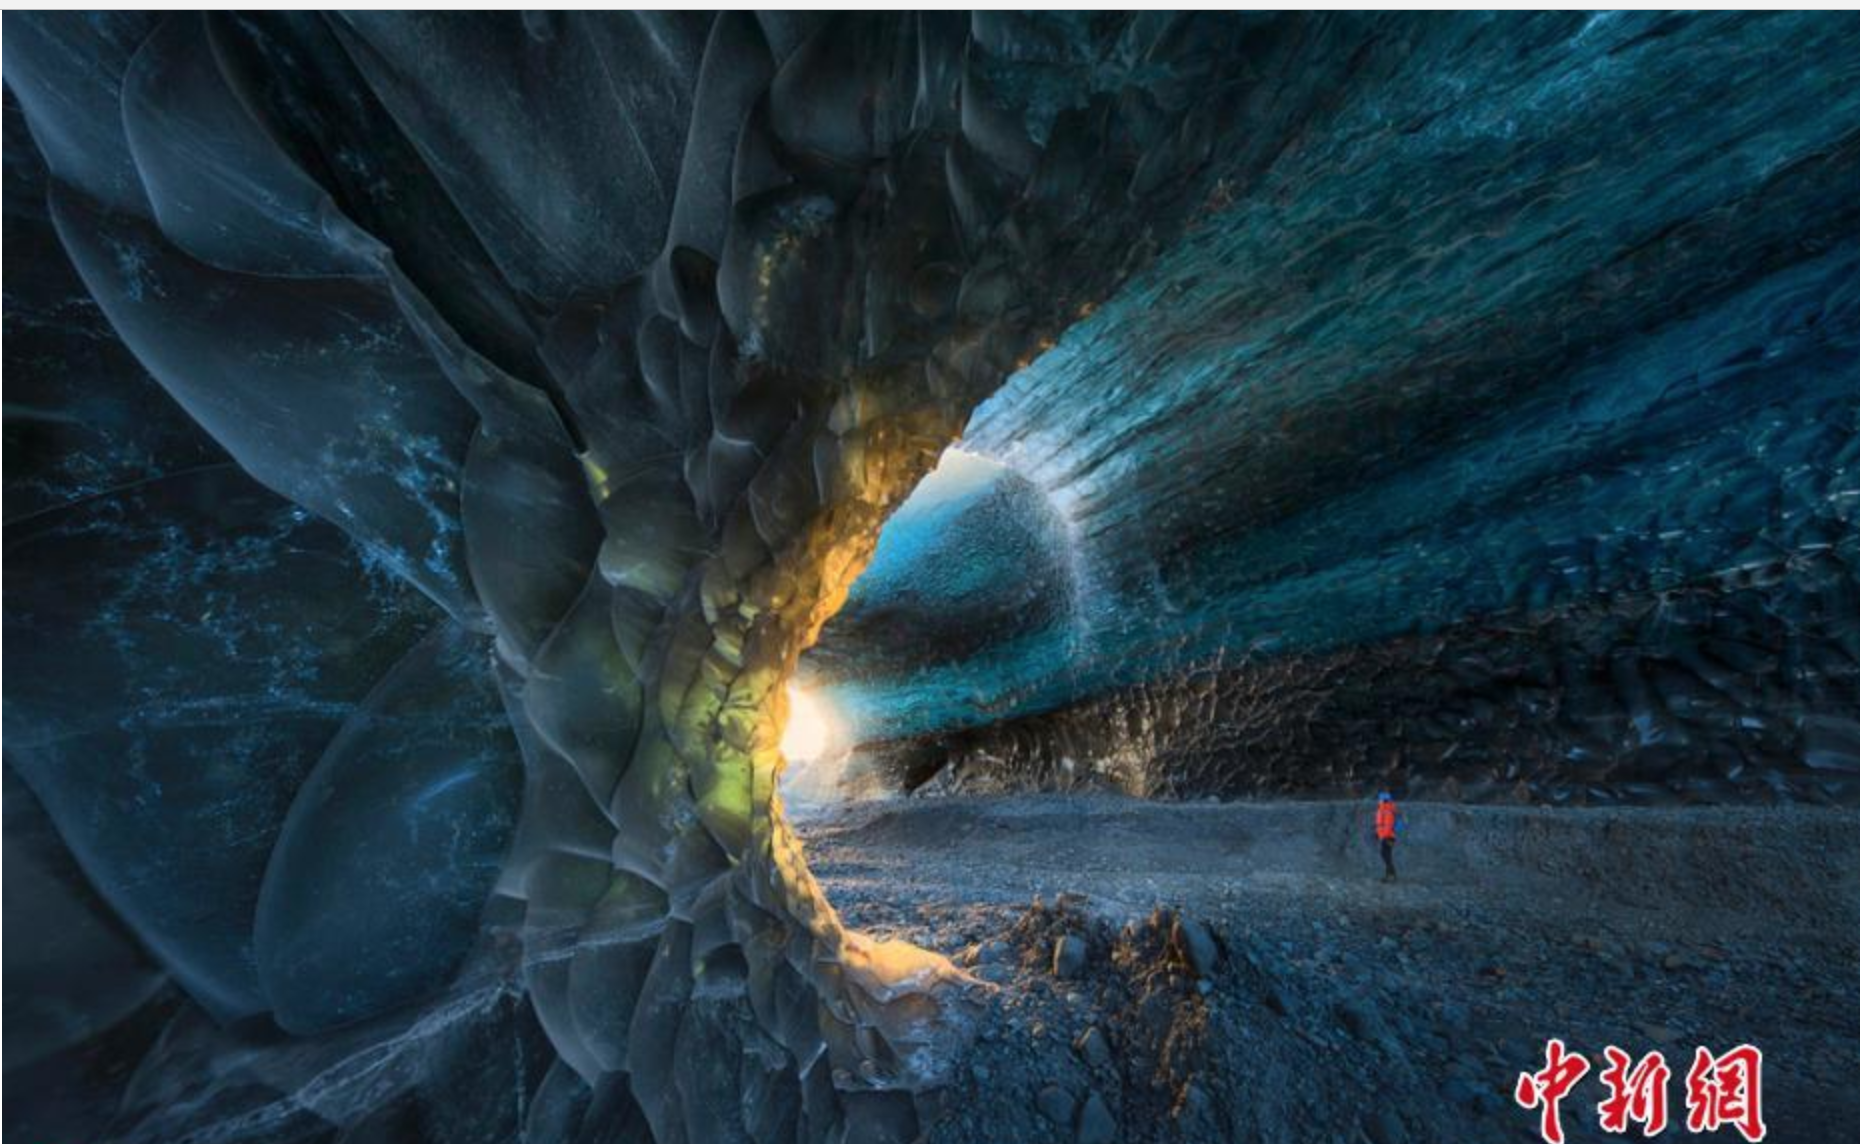 摄影师拍冰岛震撼冰洞景观 仿佛神秘异世界